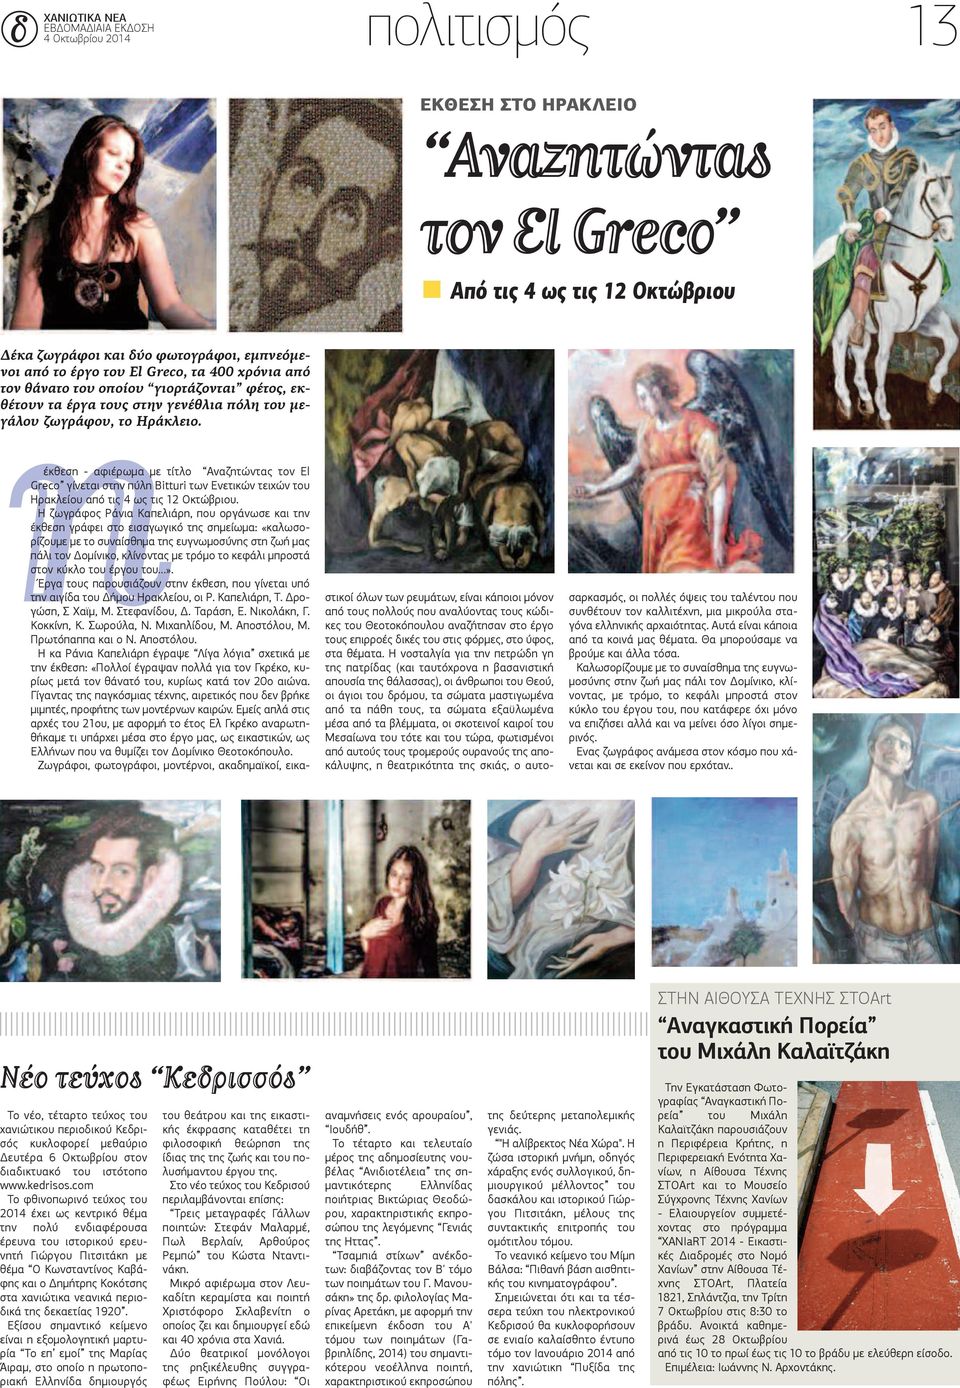 έκθεση - αφιέρωμα με τίτλο Αναζητώντας τον El Greco γίνεται στην πύλη Bitturi των Ενετικών τειχών του Ηρακλείου από τις 4 ως τις 12 Οκτώβριου.